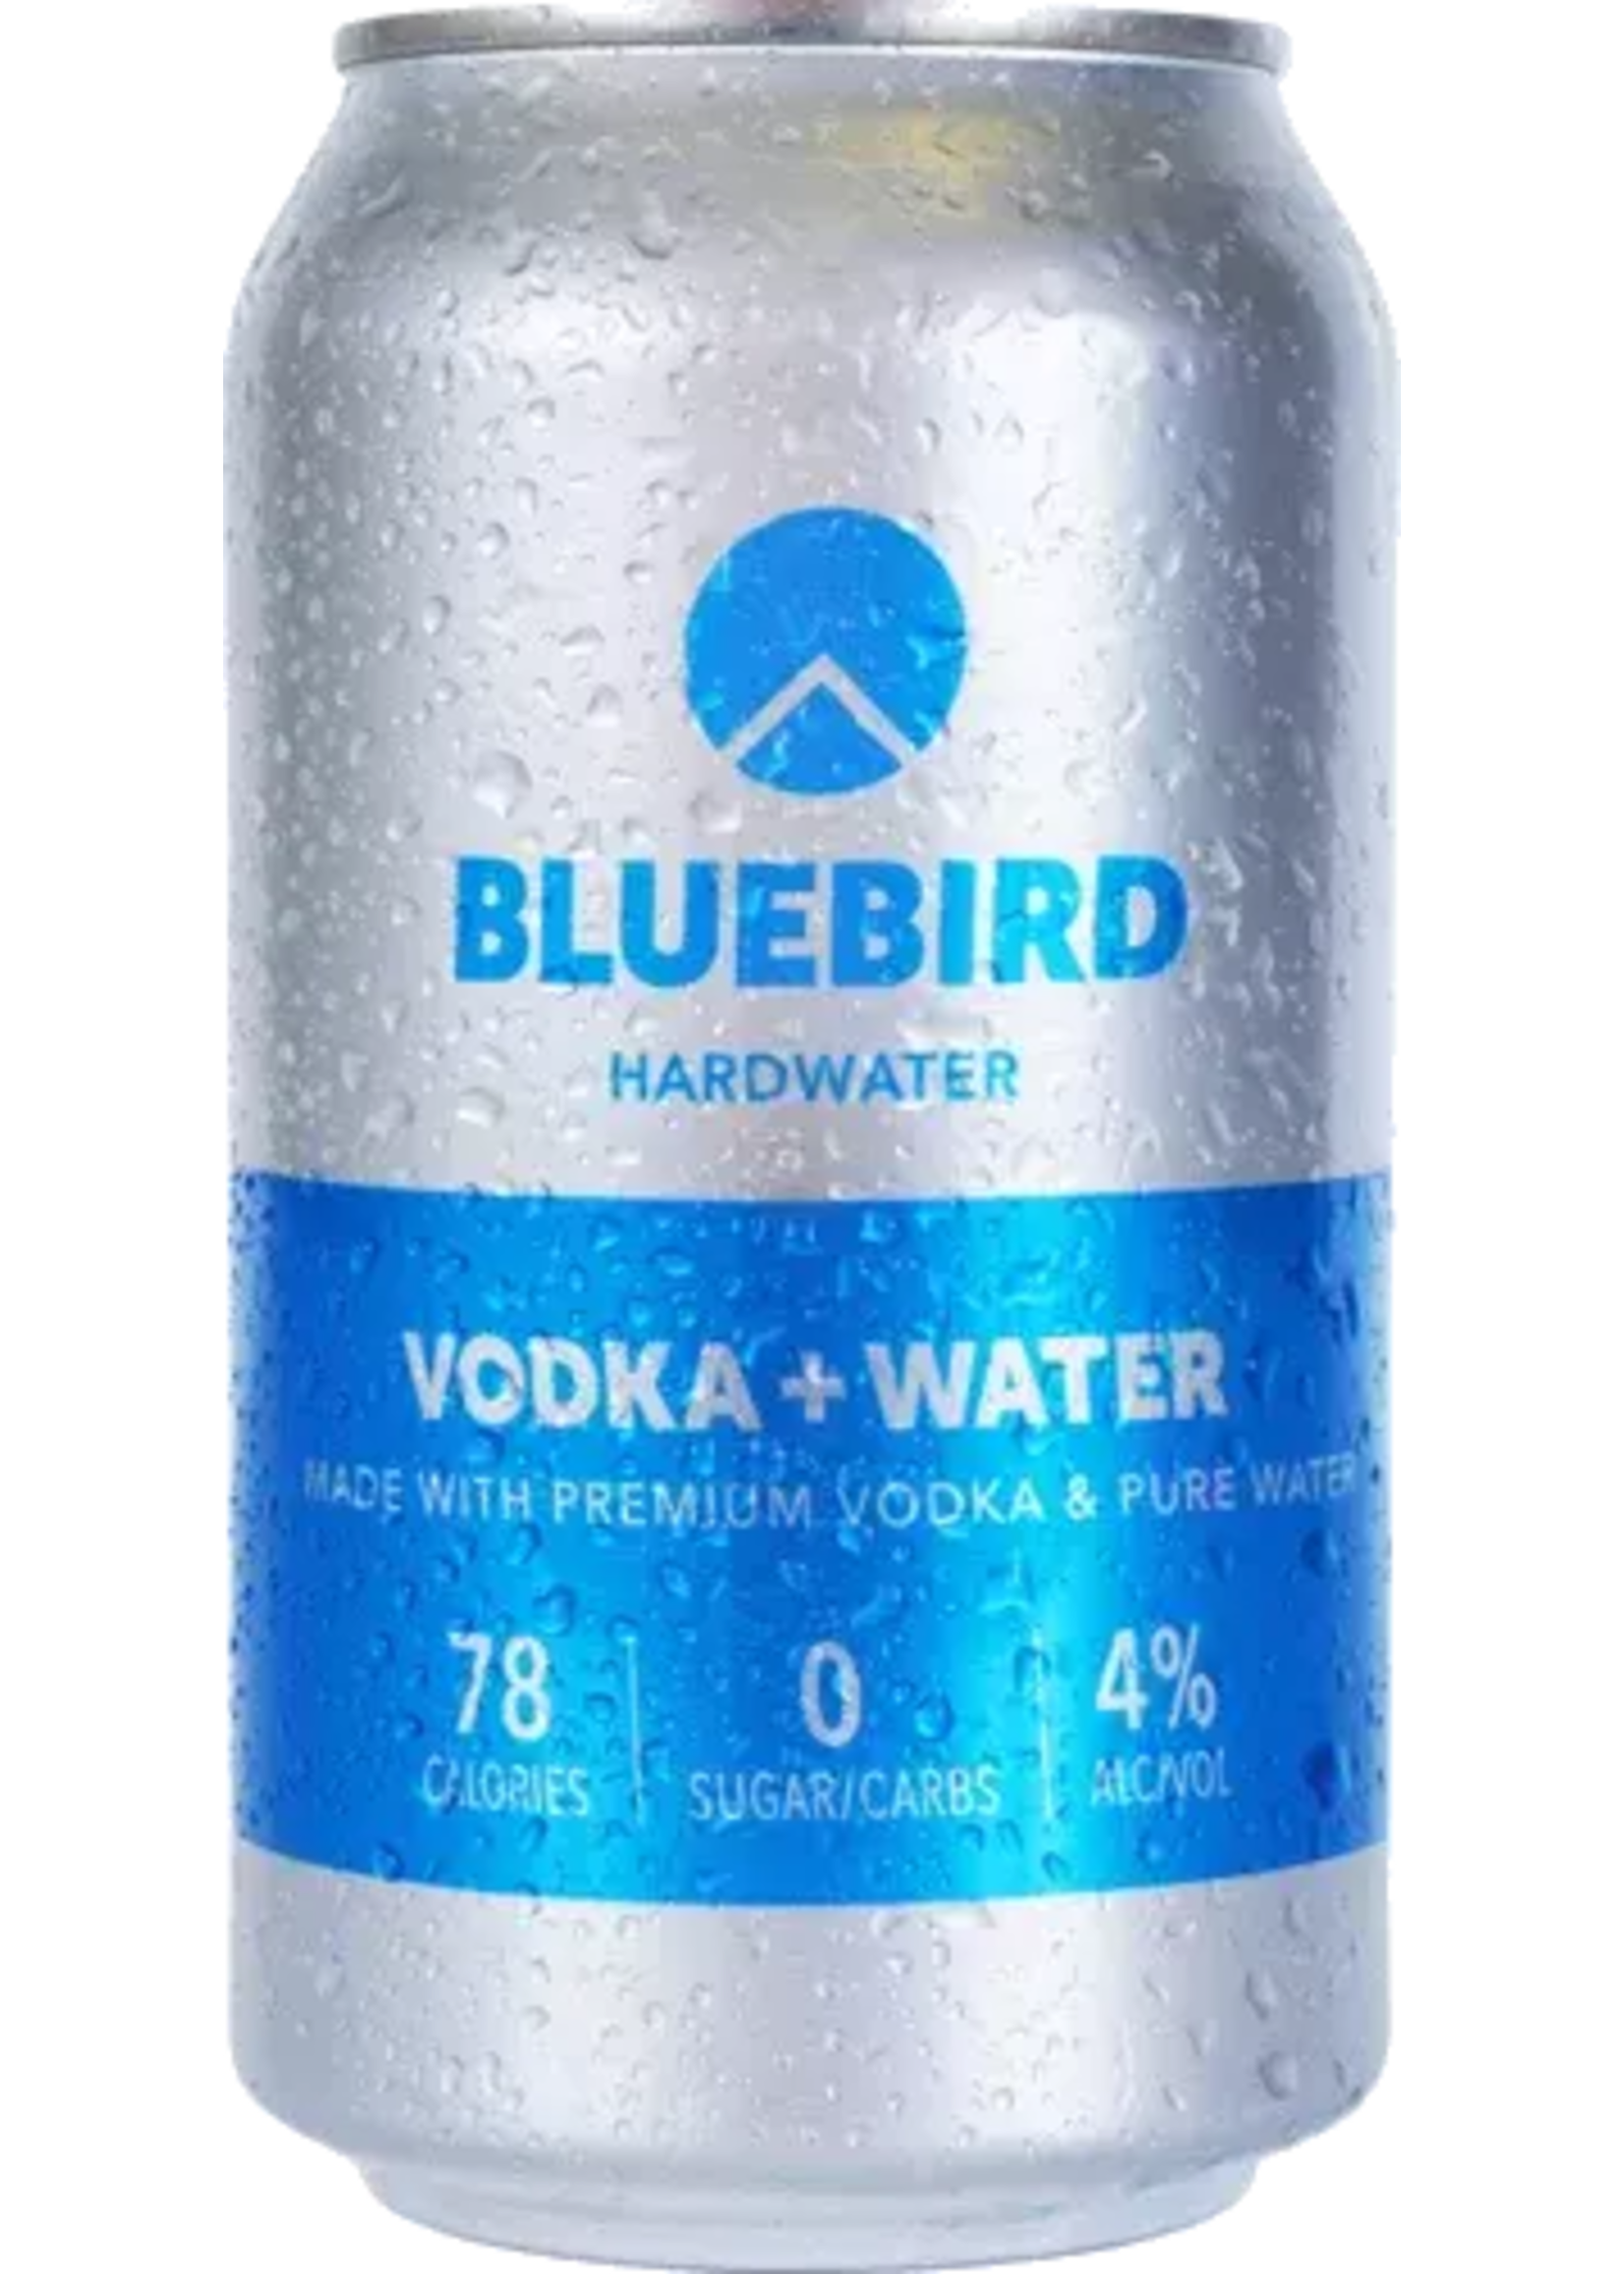 Bluebird Bluebird Hardwater / Vodka + Water 4% abv  / 355mL 4x Cans